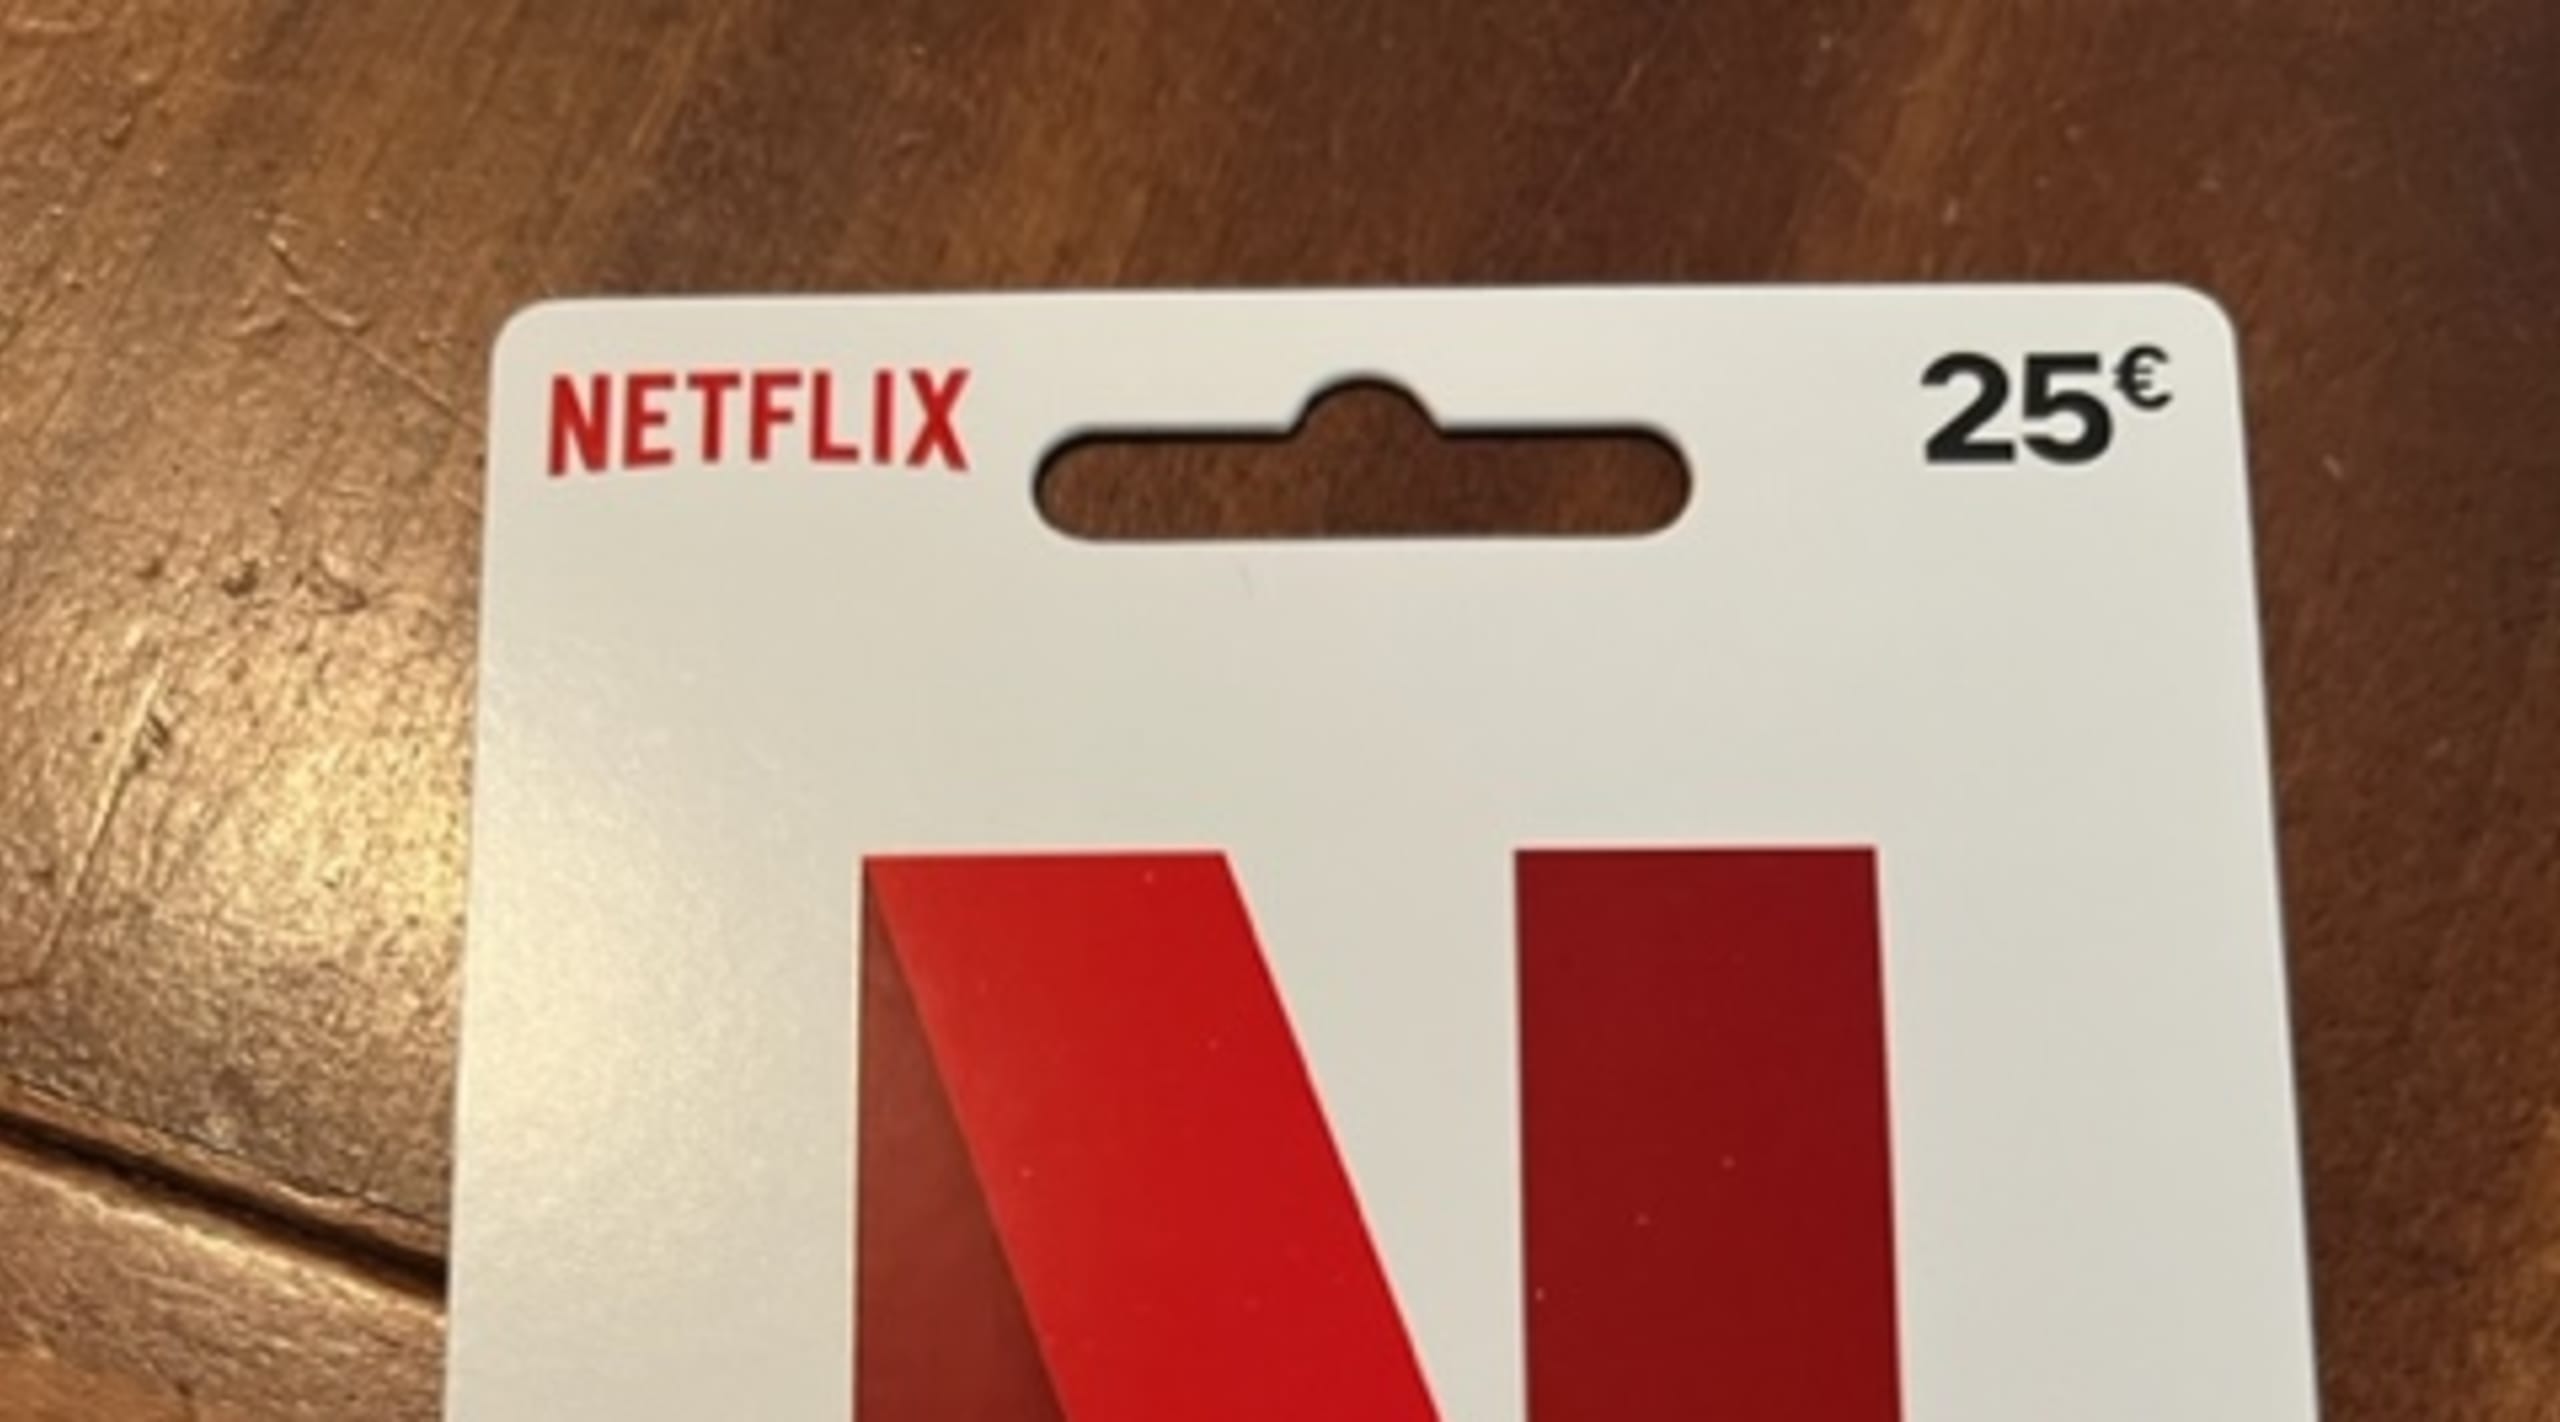 25 € Gutschein für Netflix